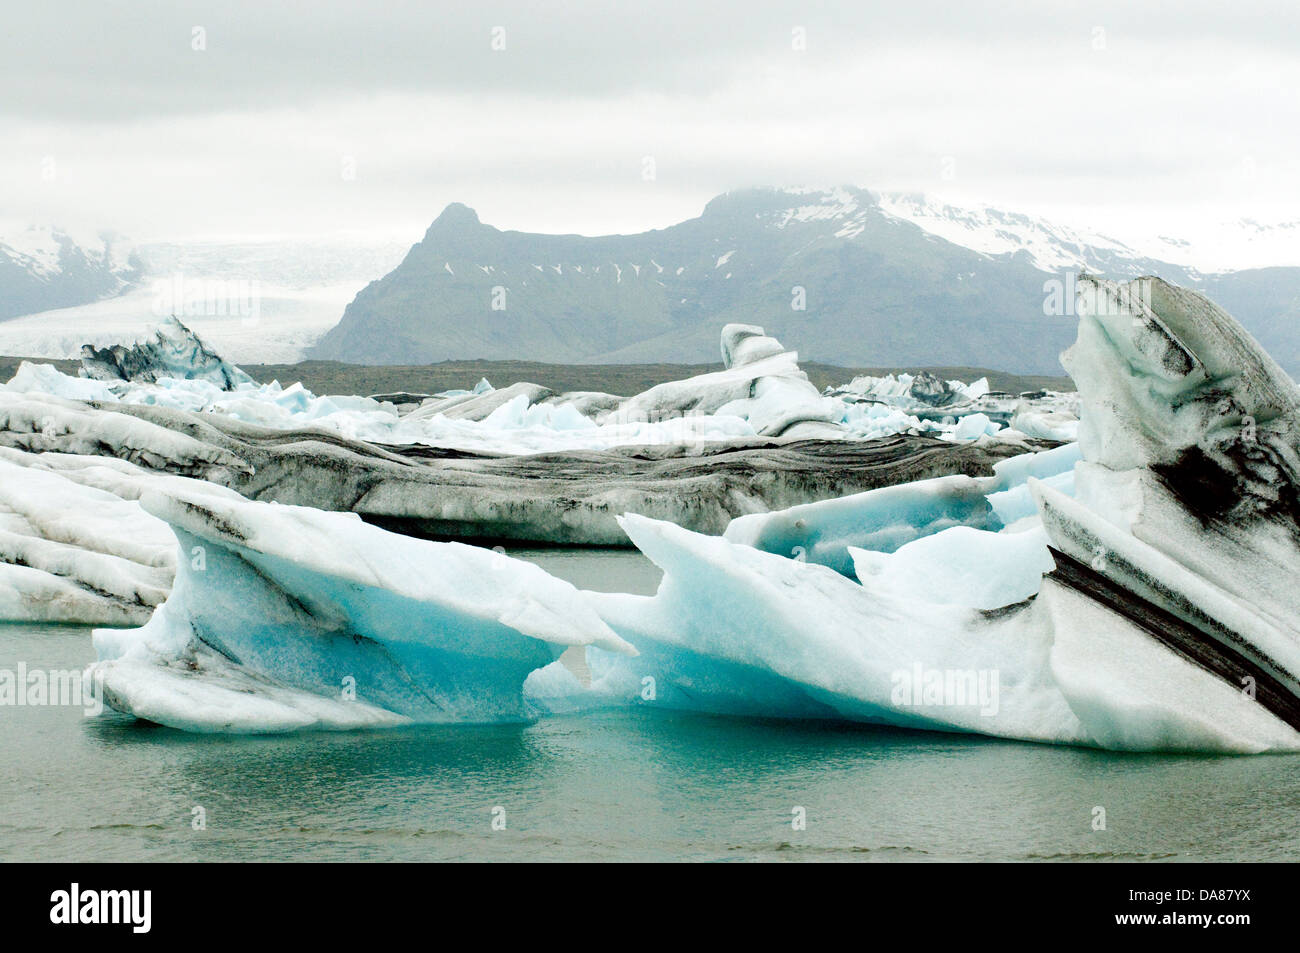 Paisaje nevado de Islandia marcos el esculpido hielo en la laguna de Jökulsárlón Foto de stock